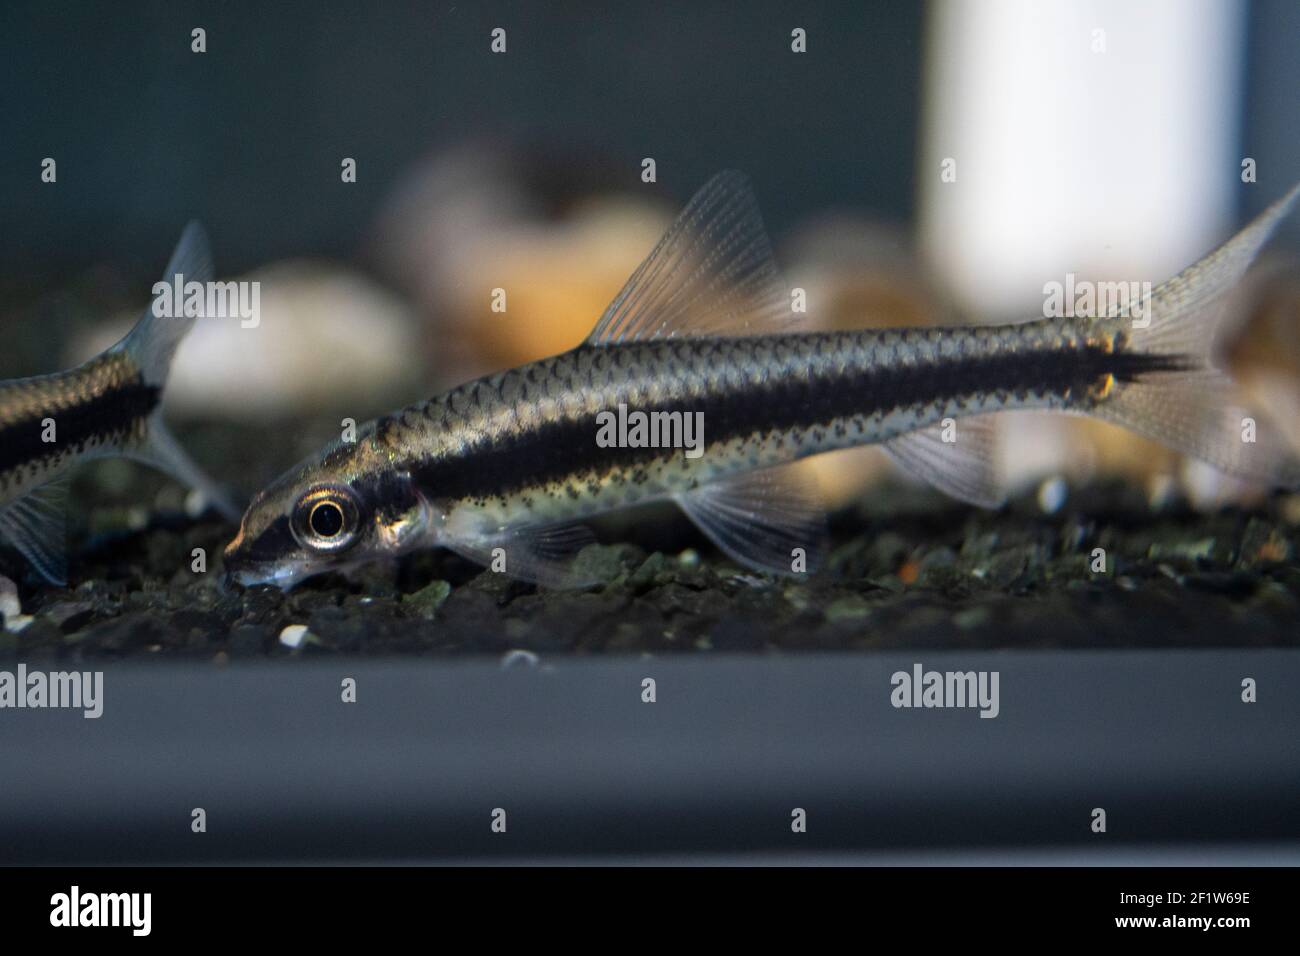 Siamese algae eater catfish Crossocheilus oblongus in freshwater aquarium Stock Photo